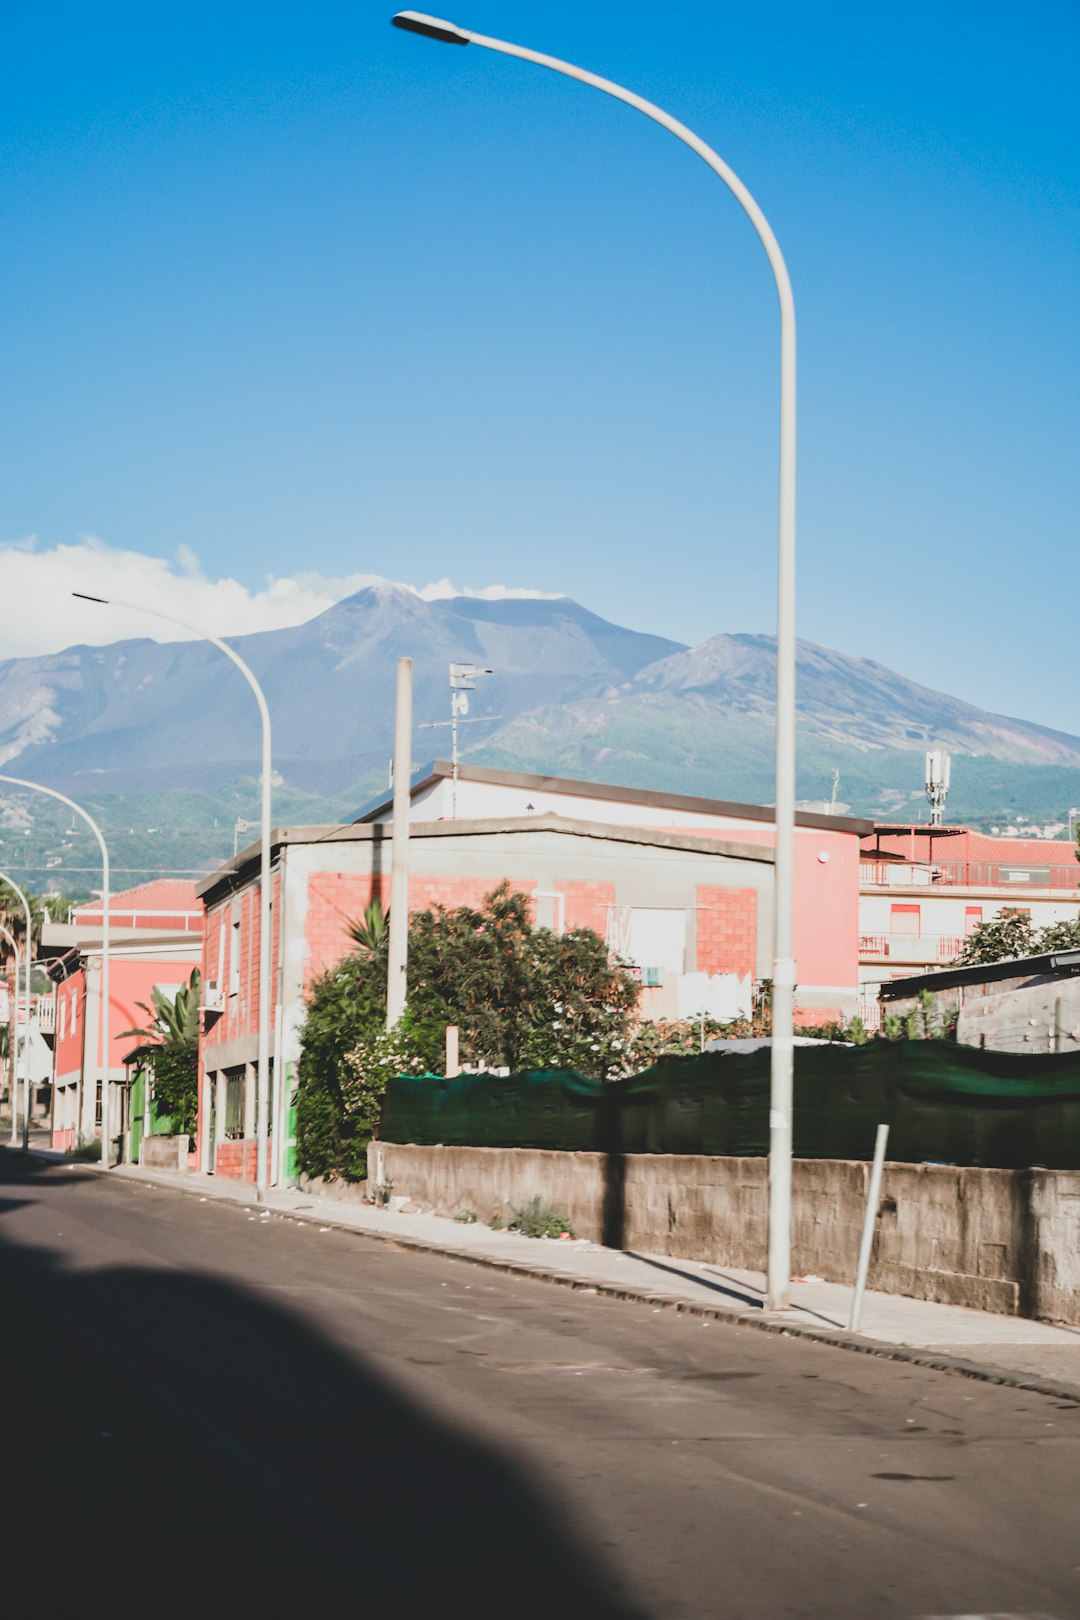 Town photo spot Mount Etna Siracusa